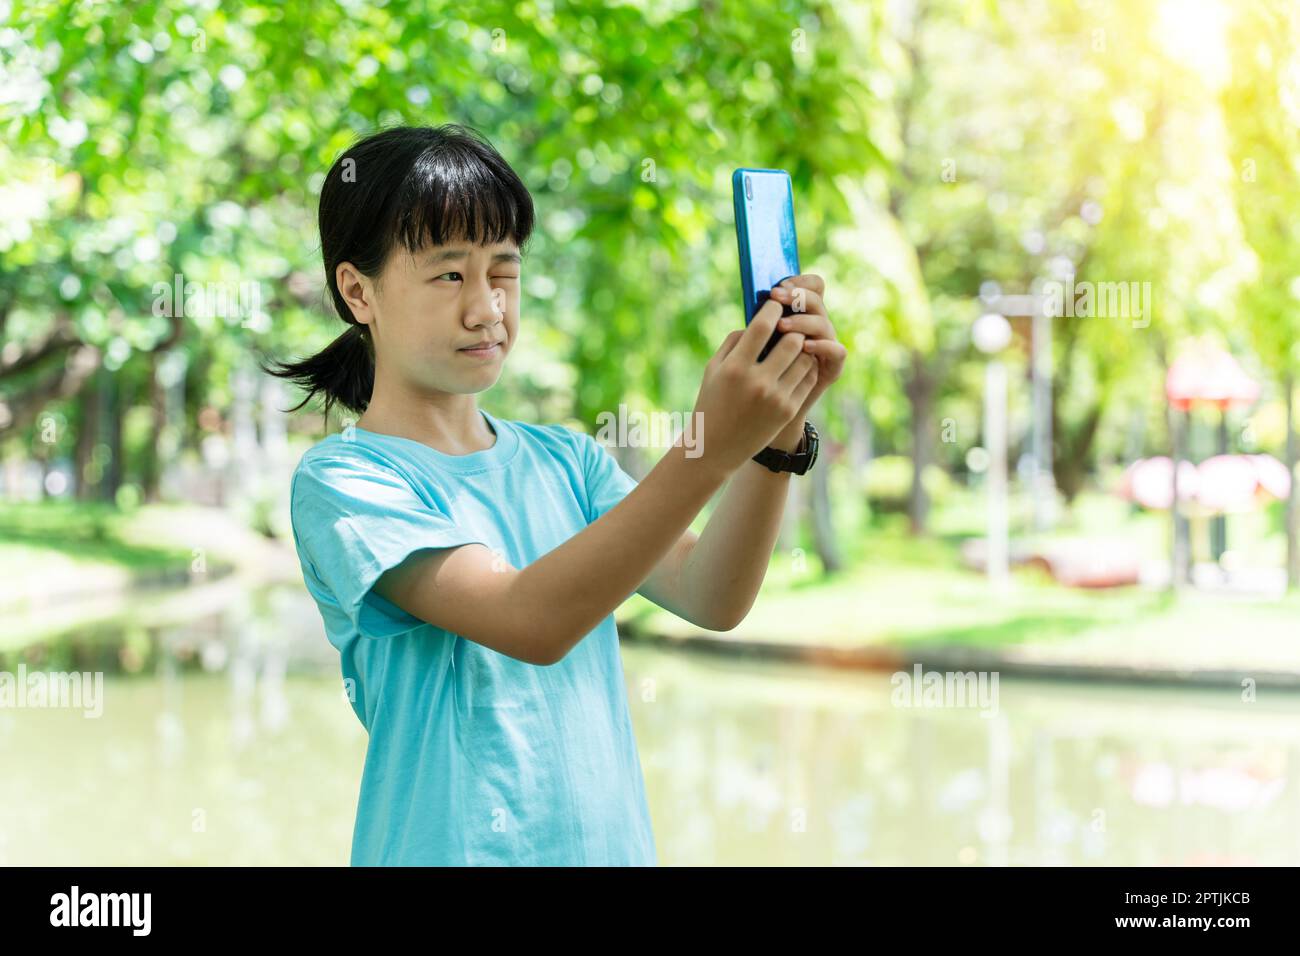 ritratto di una giovane bambina asiatica che utilizza smartphone mobile mentre si trova nel parco in una calda giornata primaverile. Foto Stock